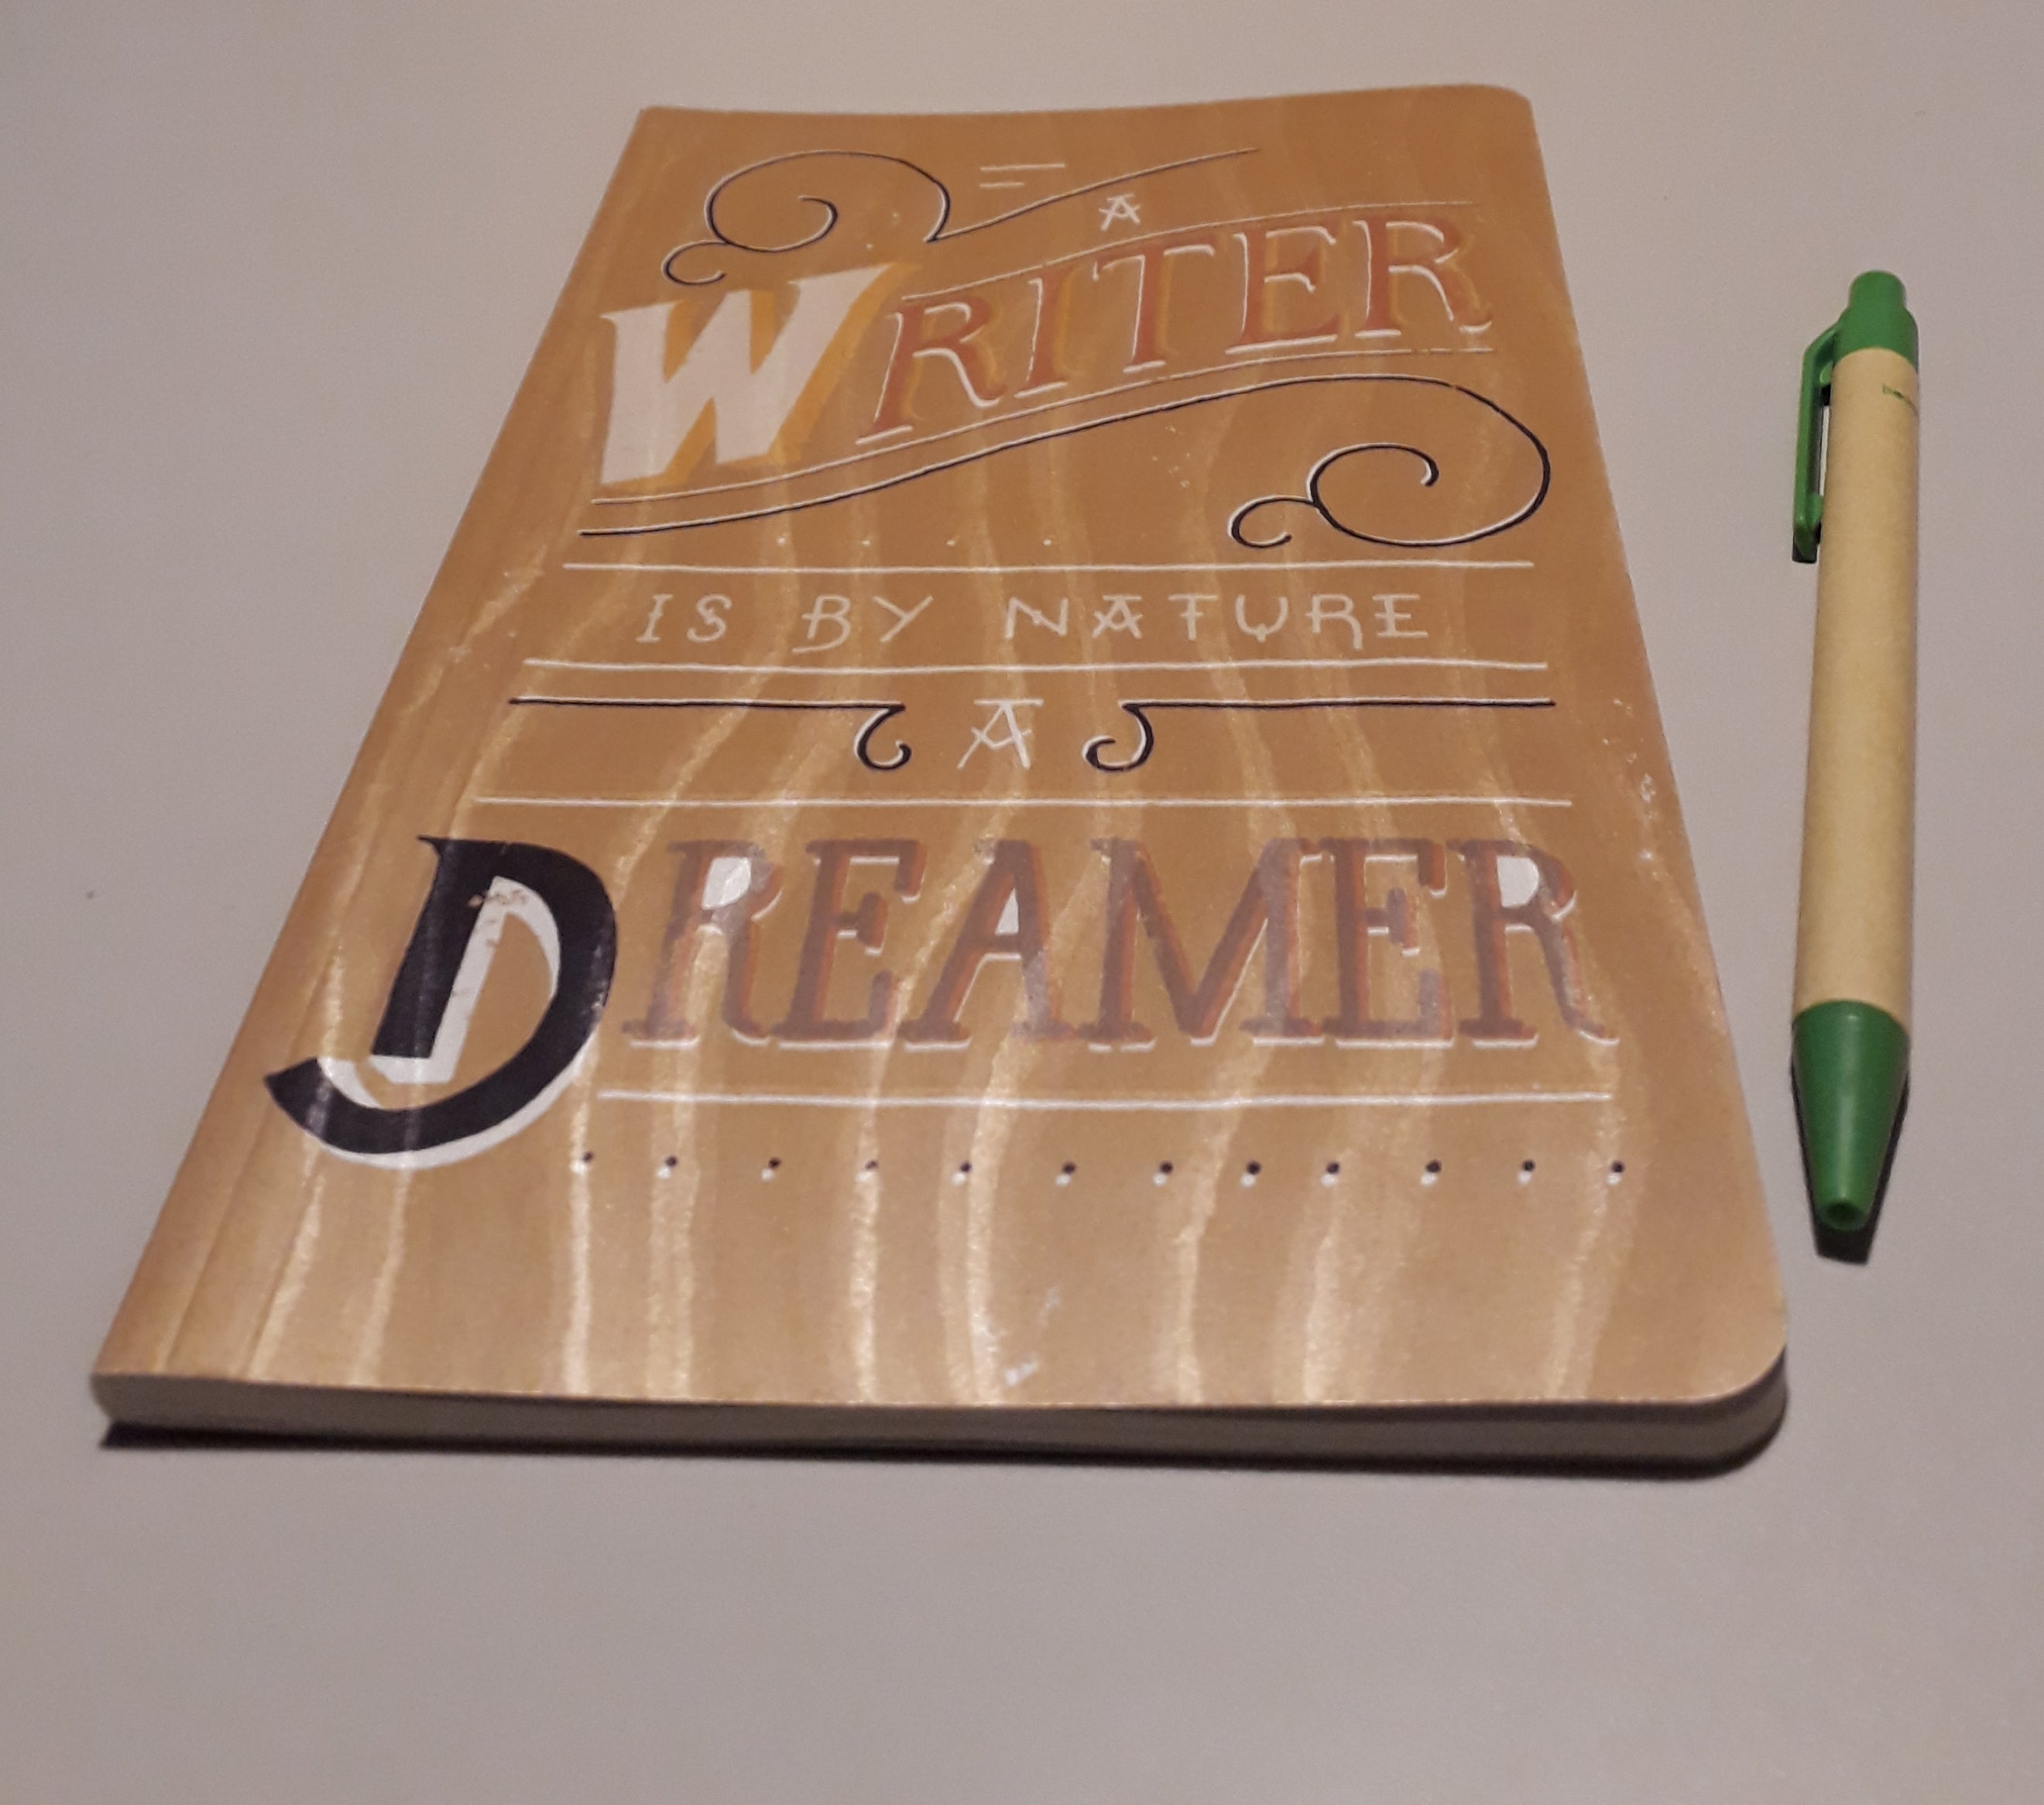 Organic notebook "A writer is by nature a dreamer" – Zintenz Organic Cards